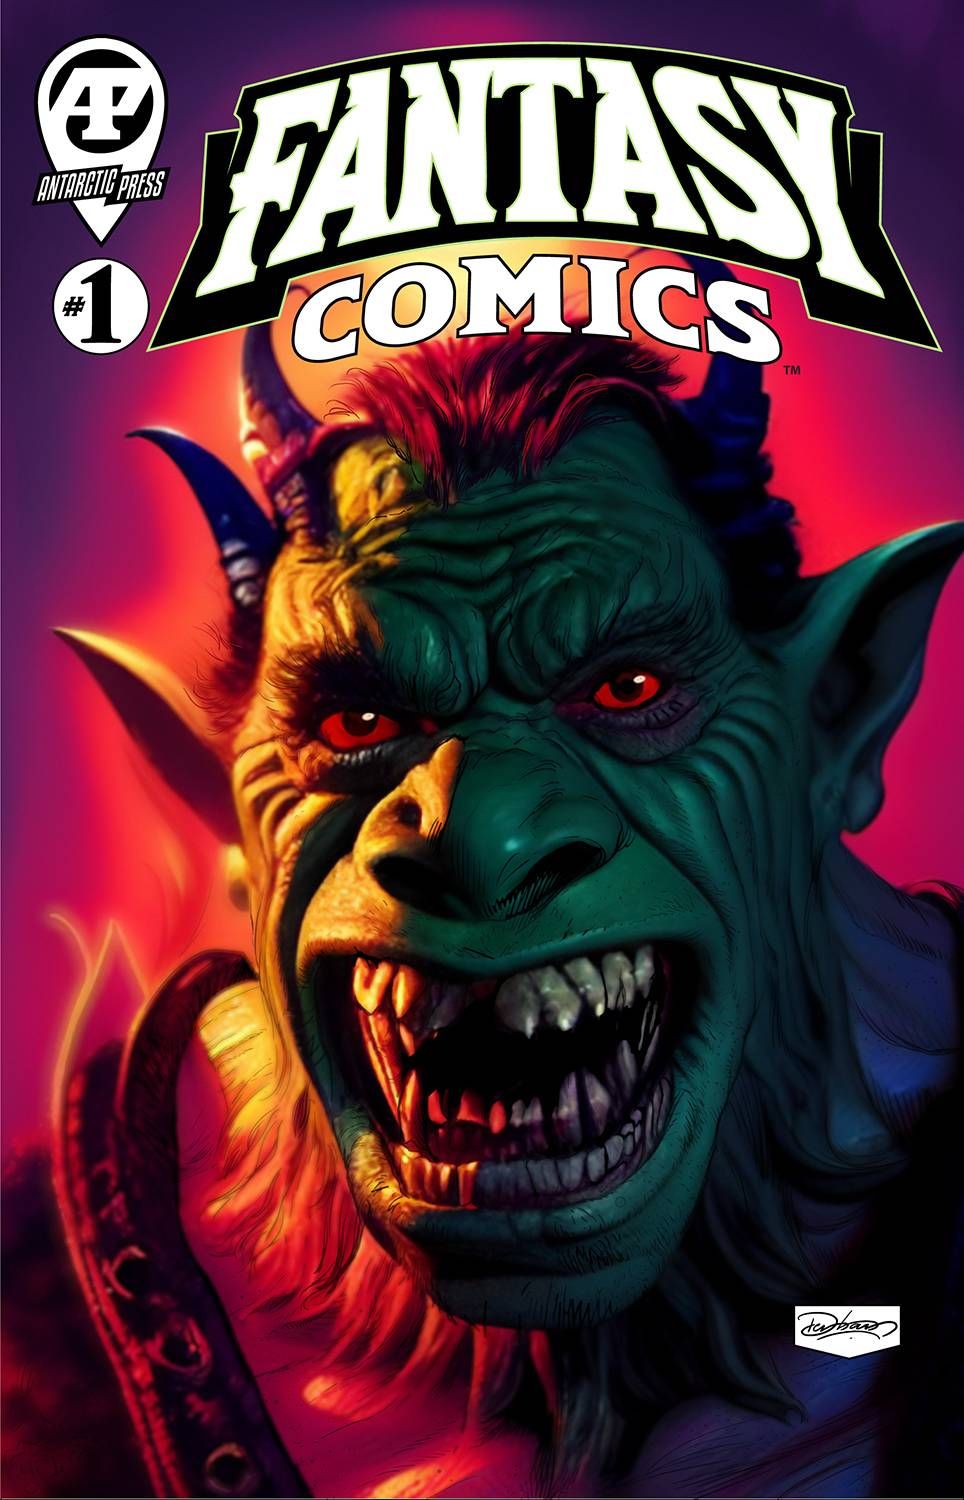 Fantasy Comics #1 Comic